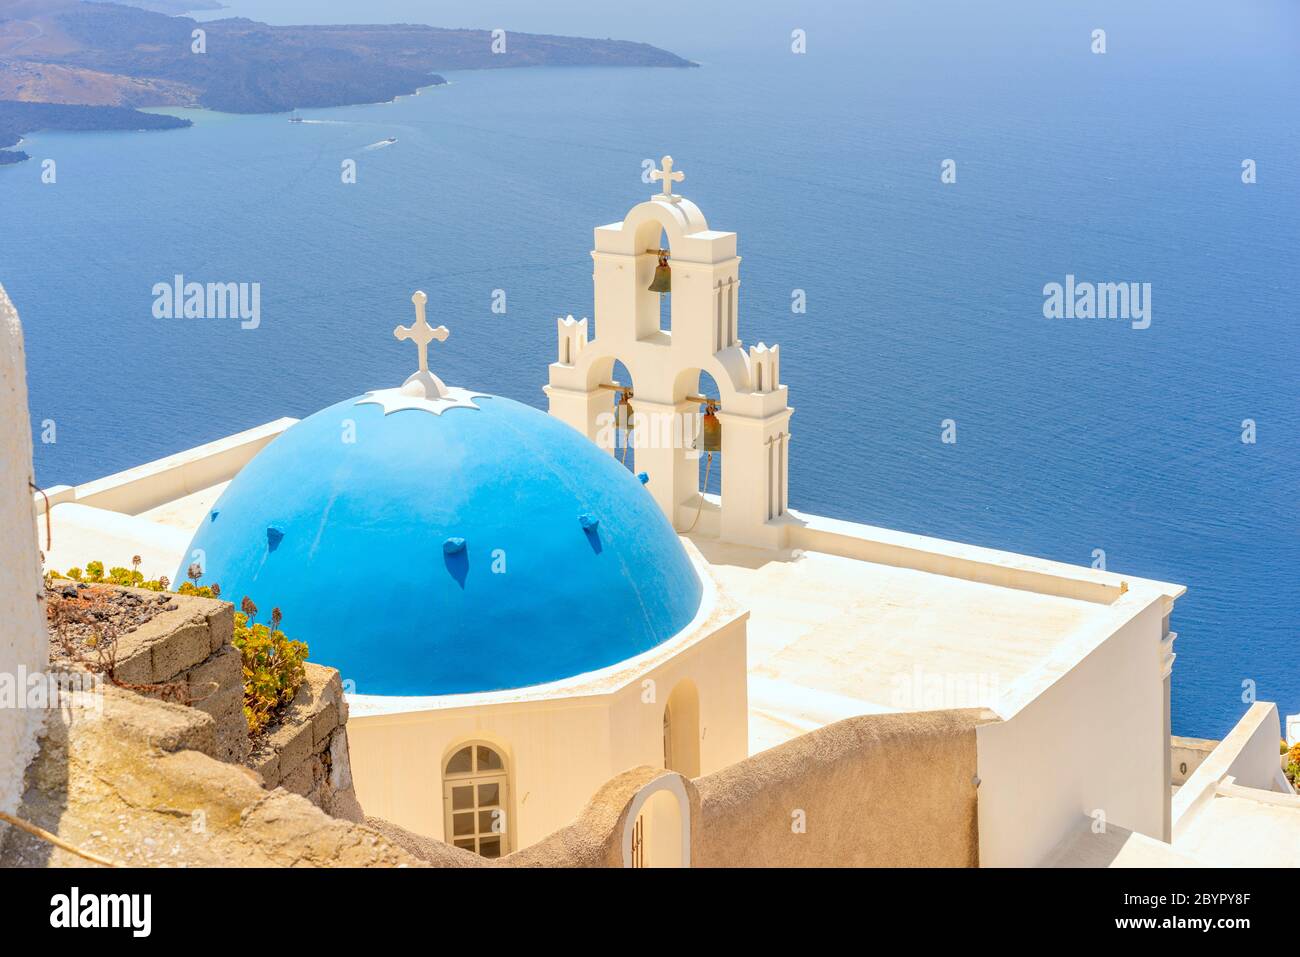 La Chiesa Cattolica della Vergine Maria a cupola blu e le tre campane di Fira sull'isola greca di Santorini, che si affaccia sulla caldera e sul mare Egeo Foto Stock